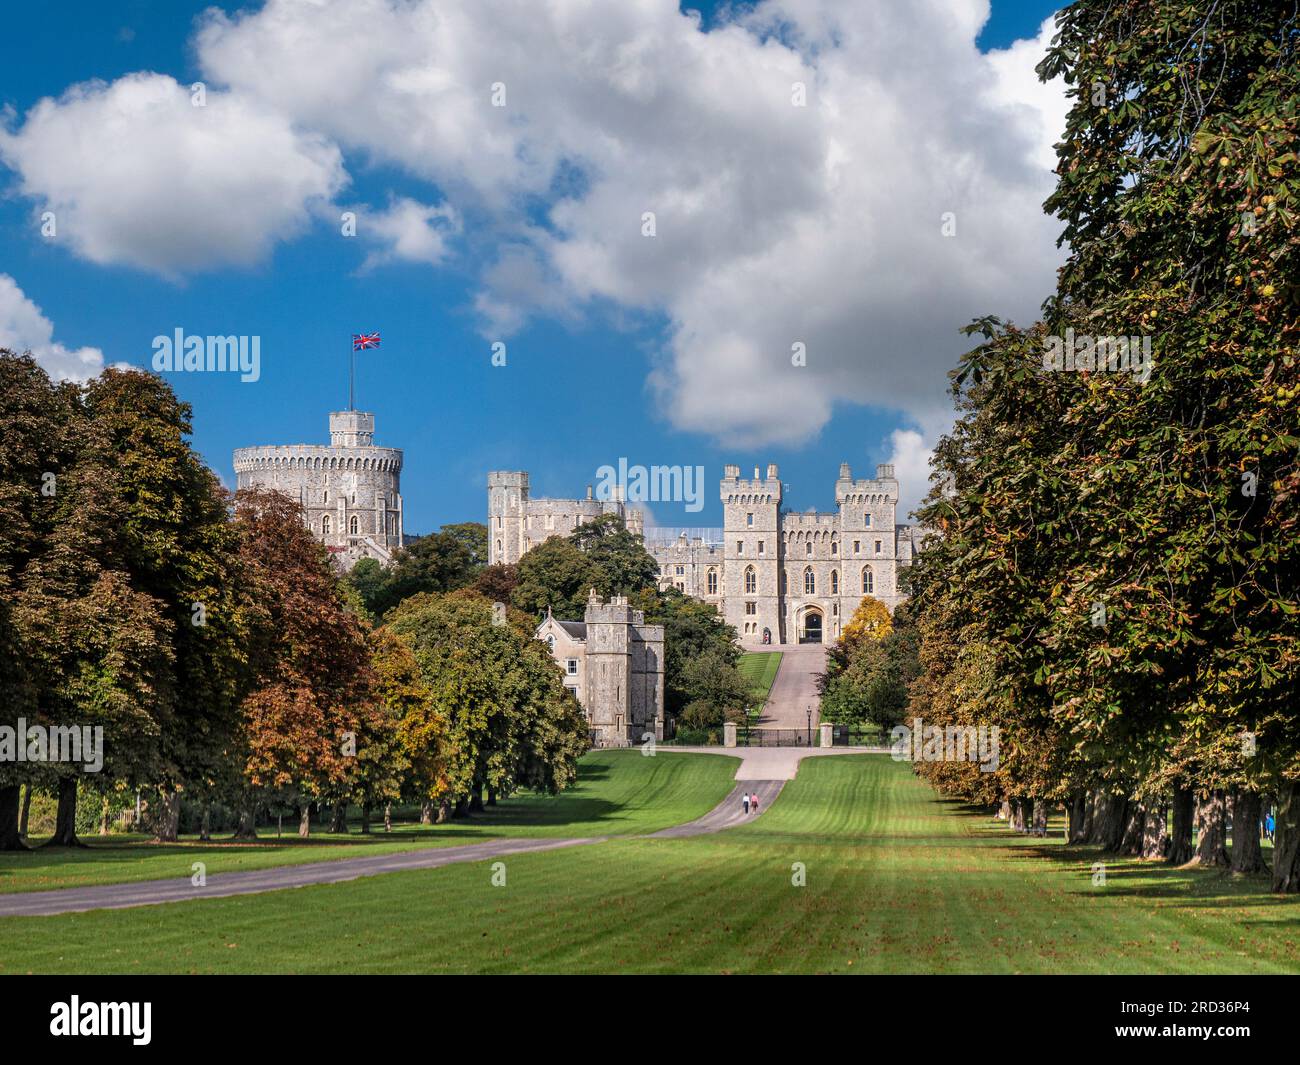 Château de Windsor et la longue marche avec drapeau Union Jack, en couleur été / automne avec des marcheurs dans le ciel bleu de soleil tacheté et nuages Windsor Berkshire Royaume-Uni Banque D'Images